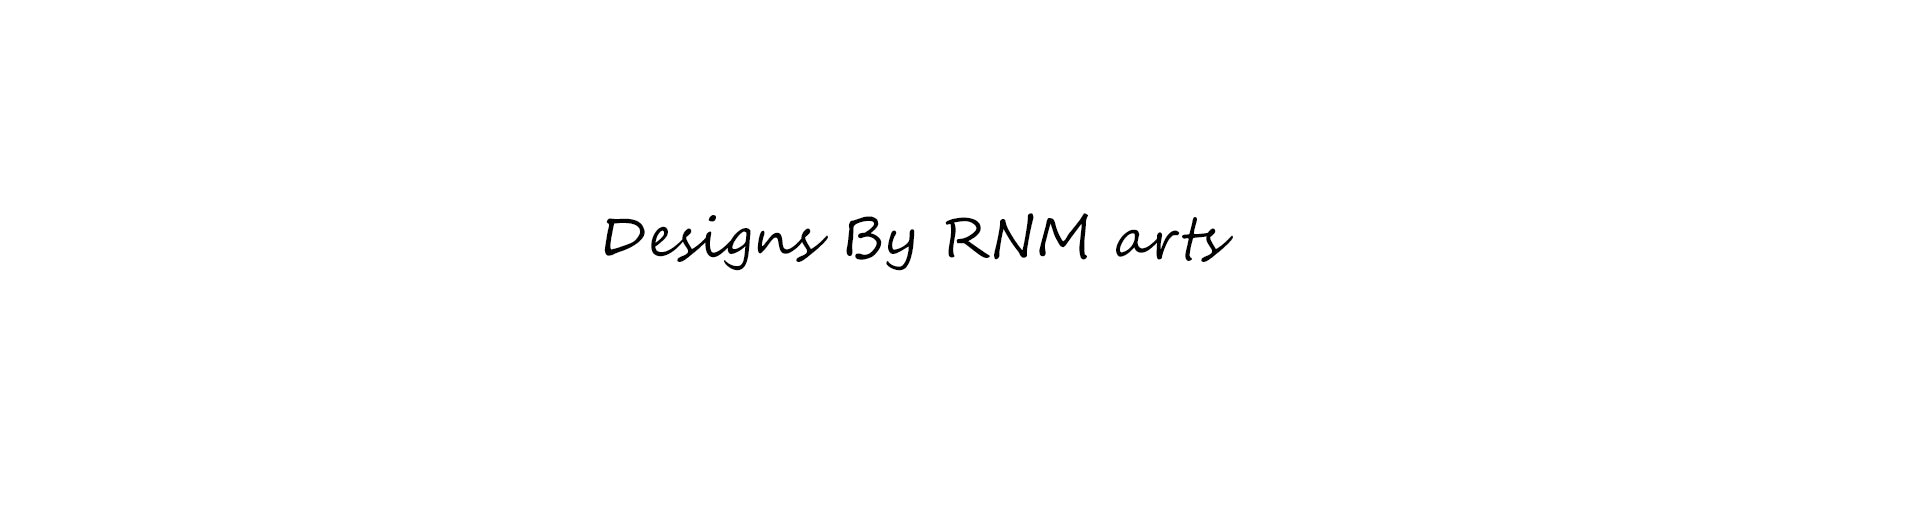 RNM arts